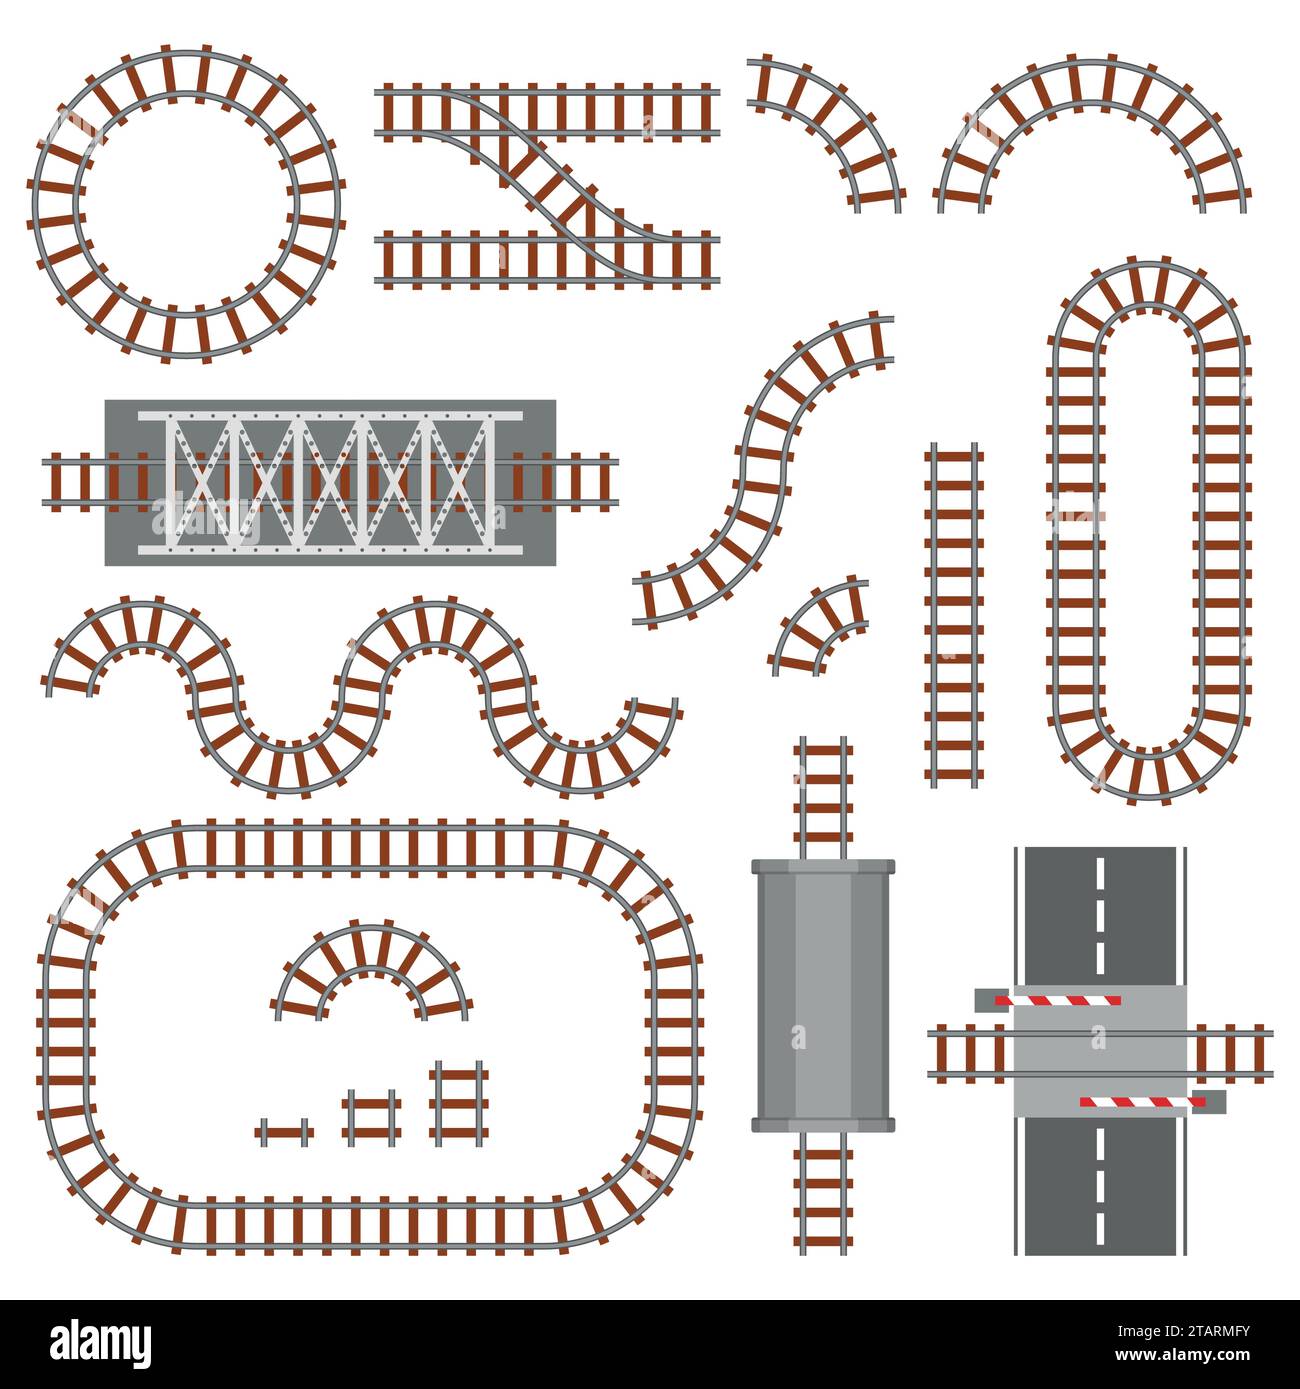 Conjunto de partes de ferrocarril, ferrocarril o ferrocarril vista superior. Diferentes elementos de construcción de trenes. Vía de transporte de tren hecha de acero y madera, ferrocarril Ilustración del Vector